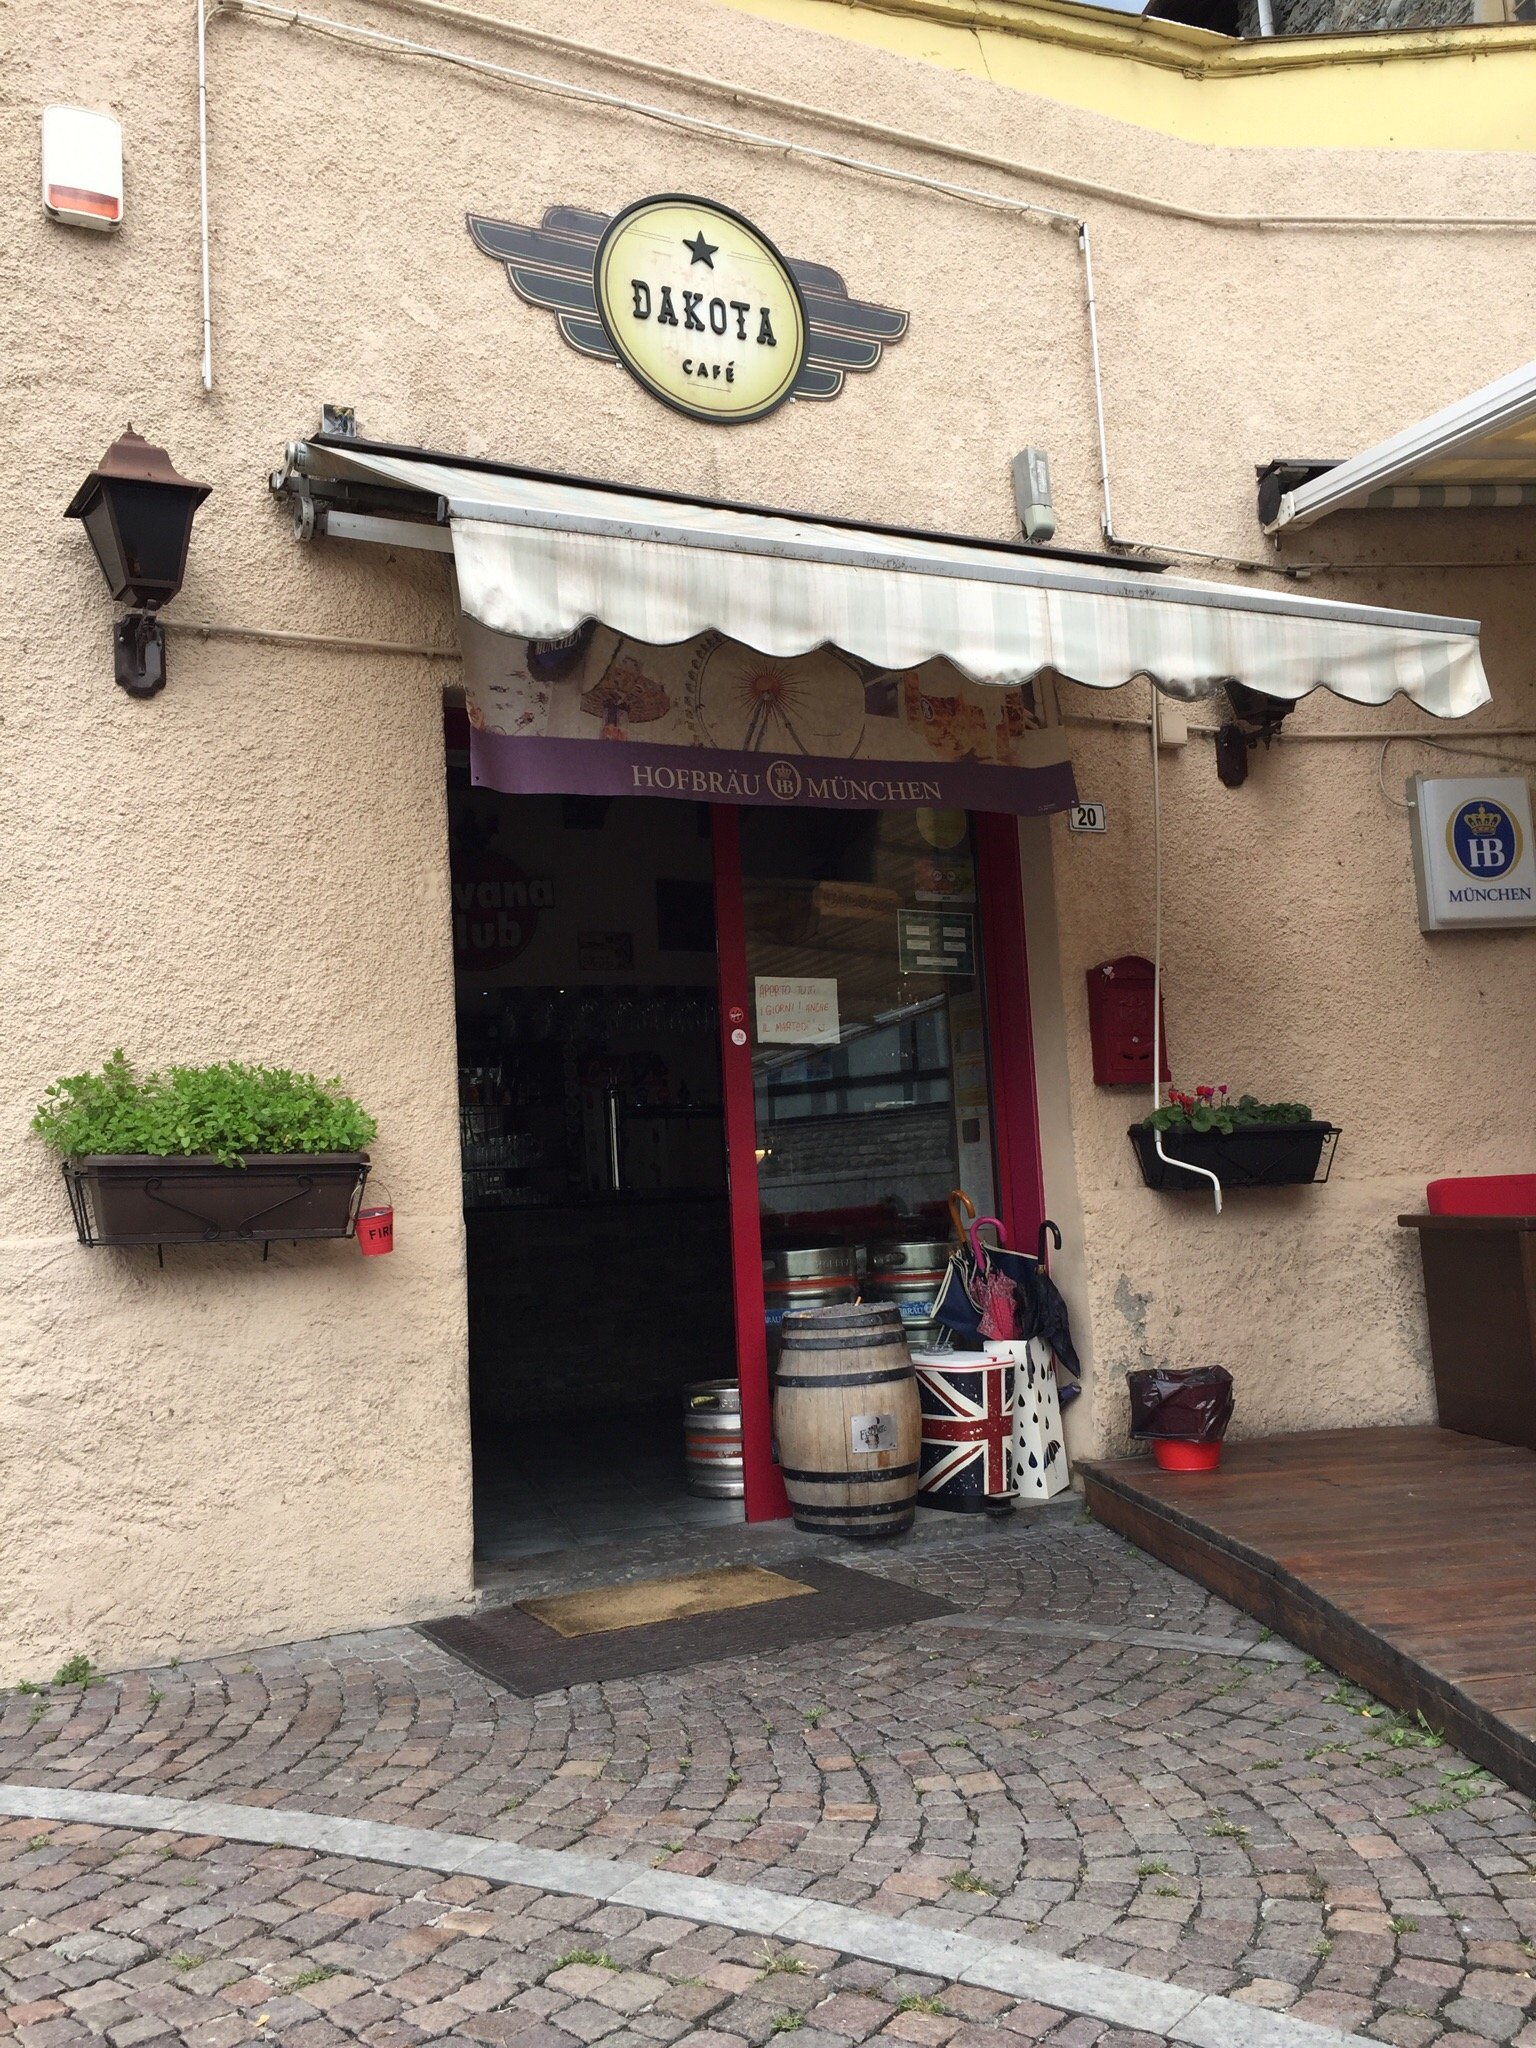 Cafe Dakota, Berbenno di Valtellina